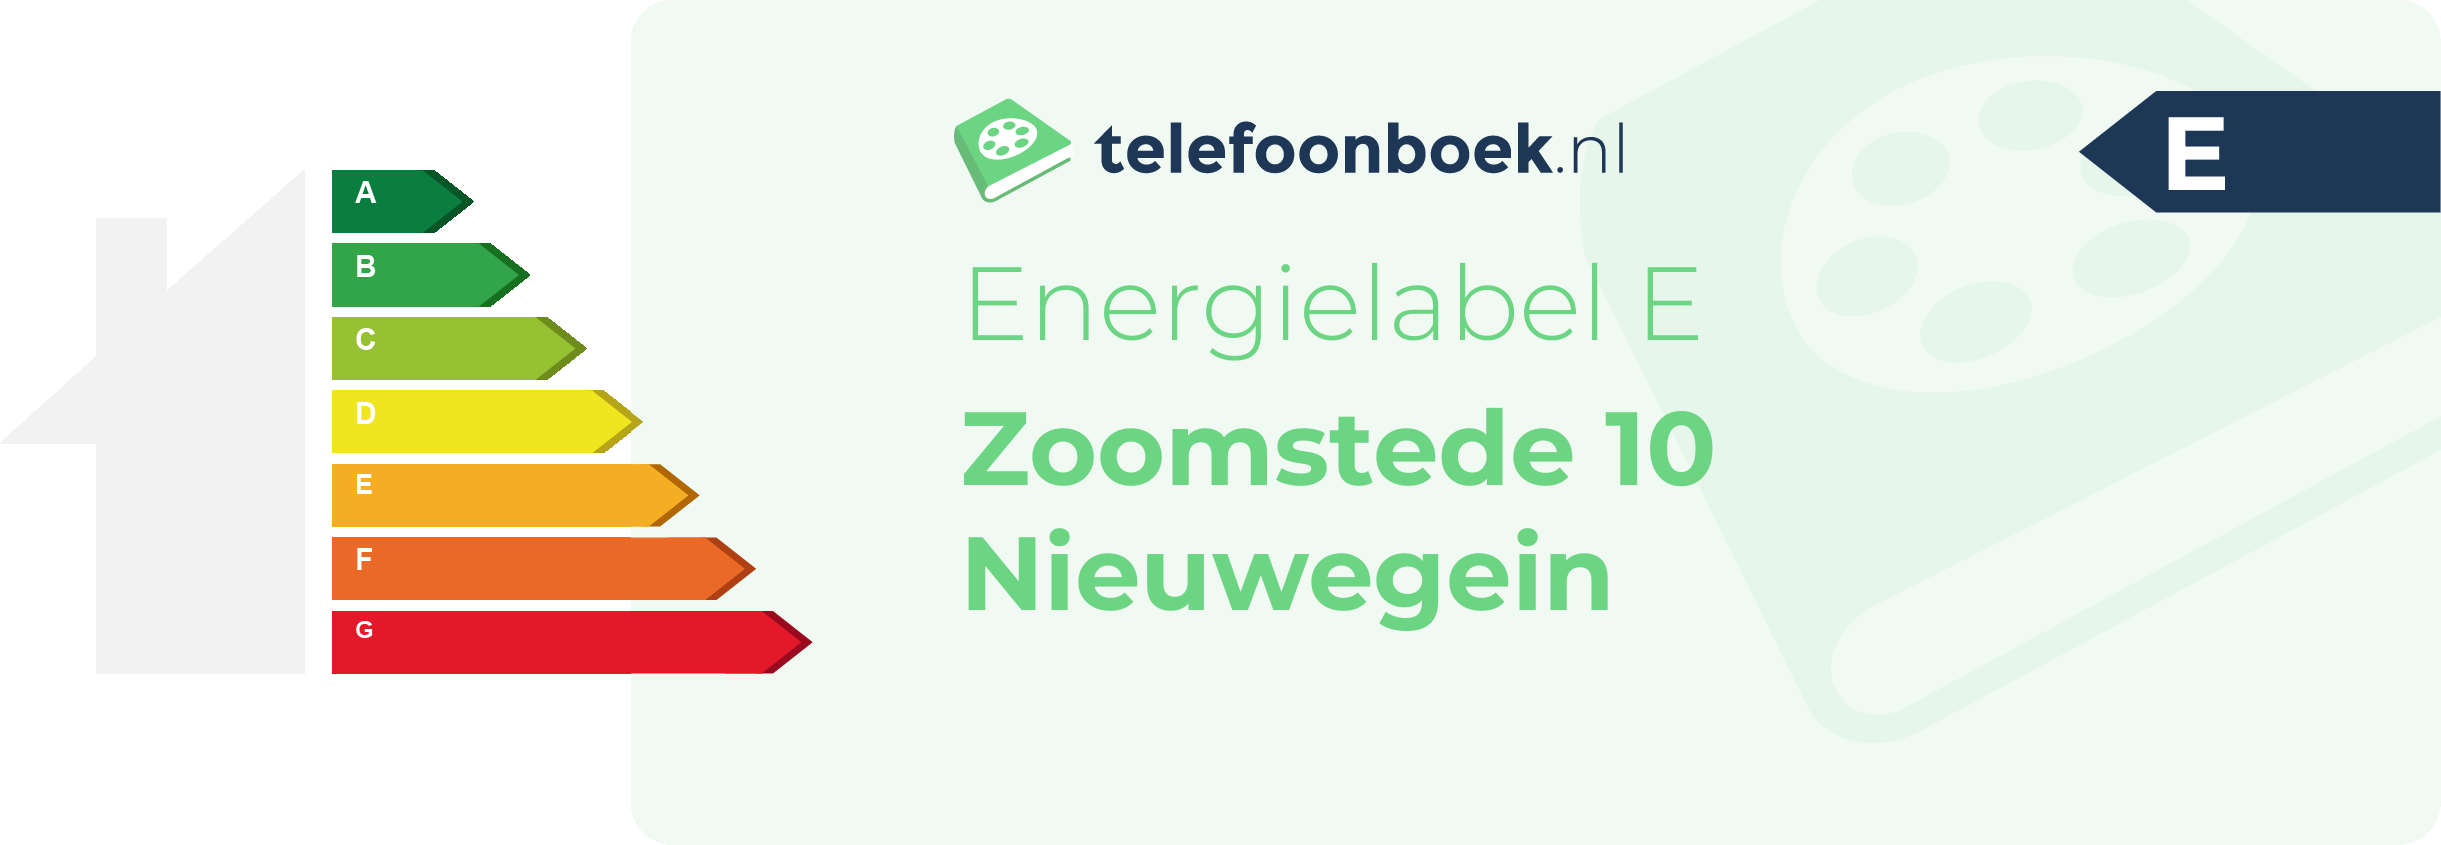 Energielabel Zoomstede 10 Nieuwegein